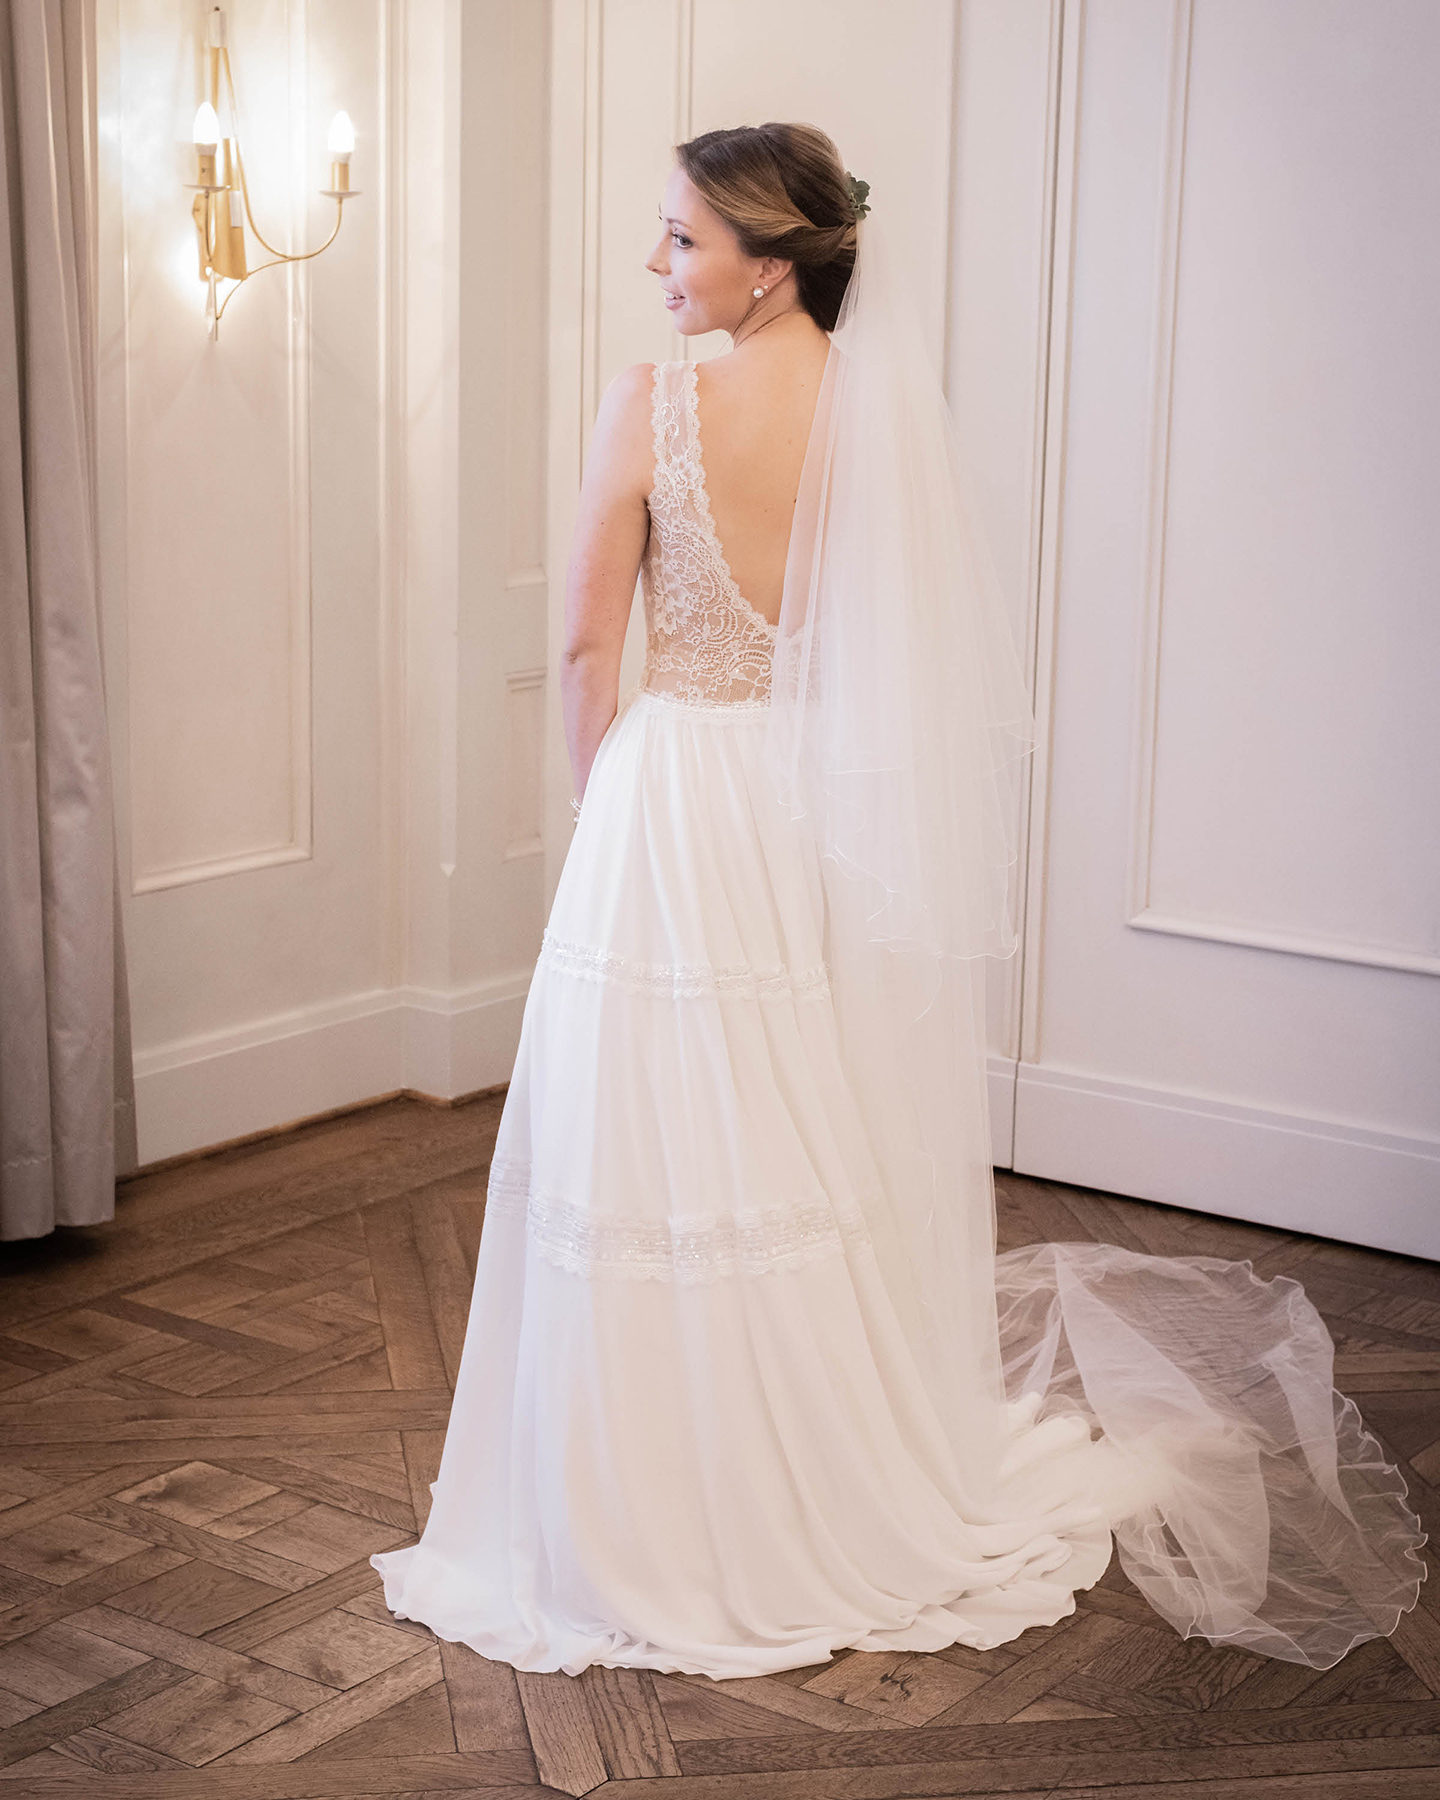 Foto von der Braut in ihrem langen weißen Hochzeitskleid mit tiefem Rückenausschnitt und einem langen Schleier